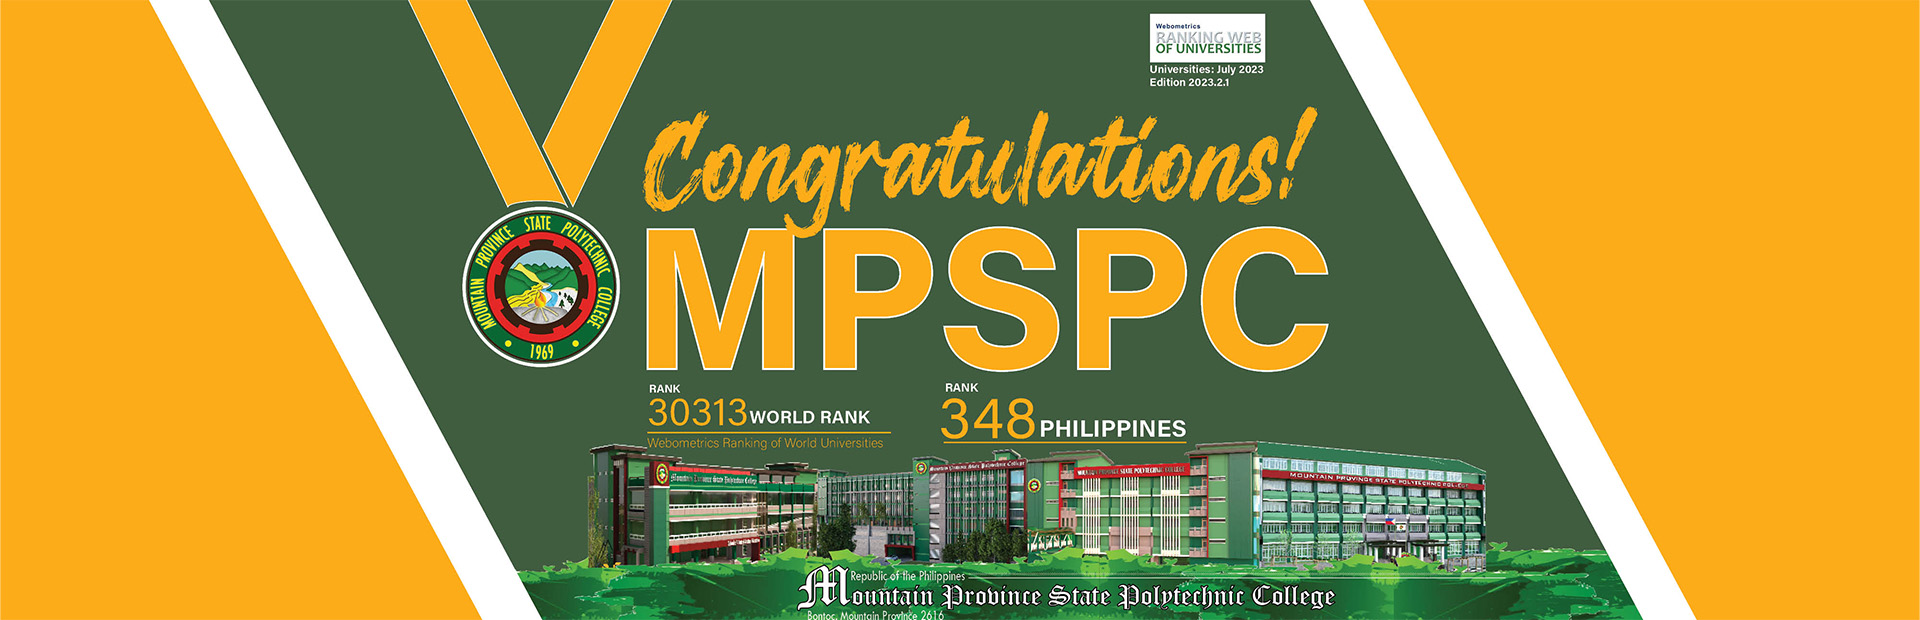 MPSPC Ranking